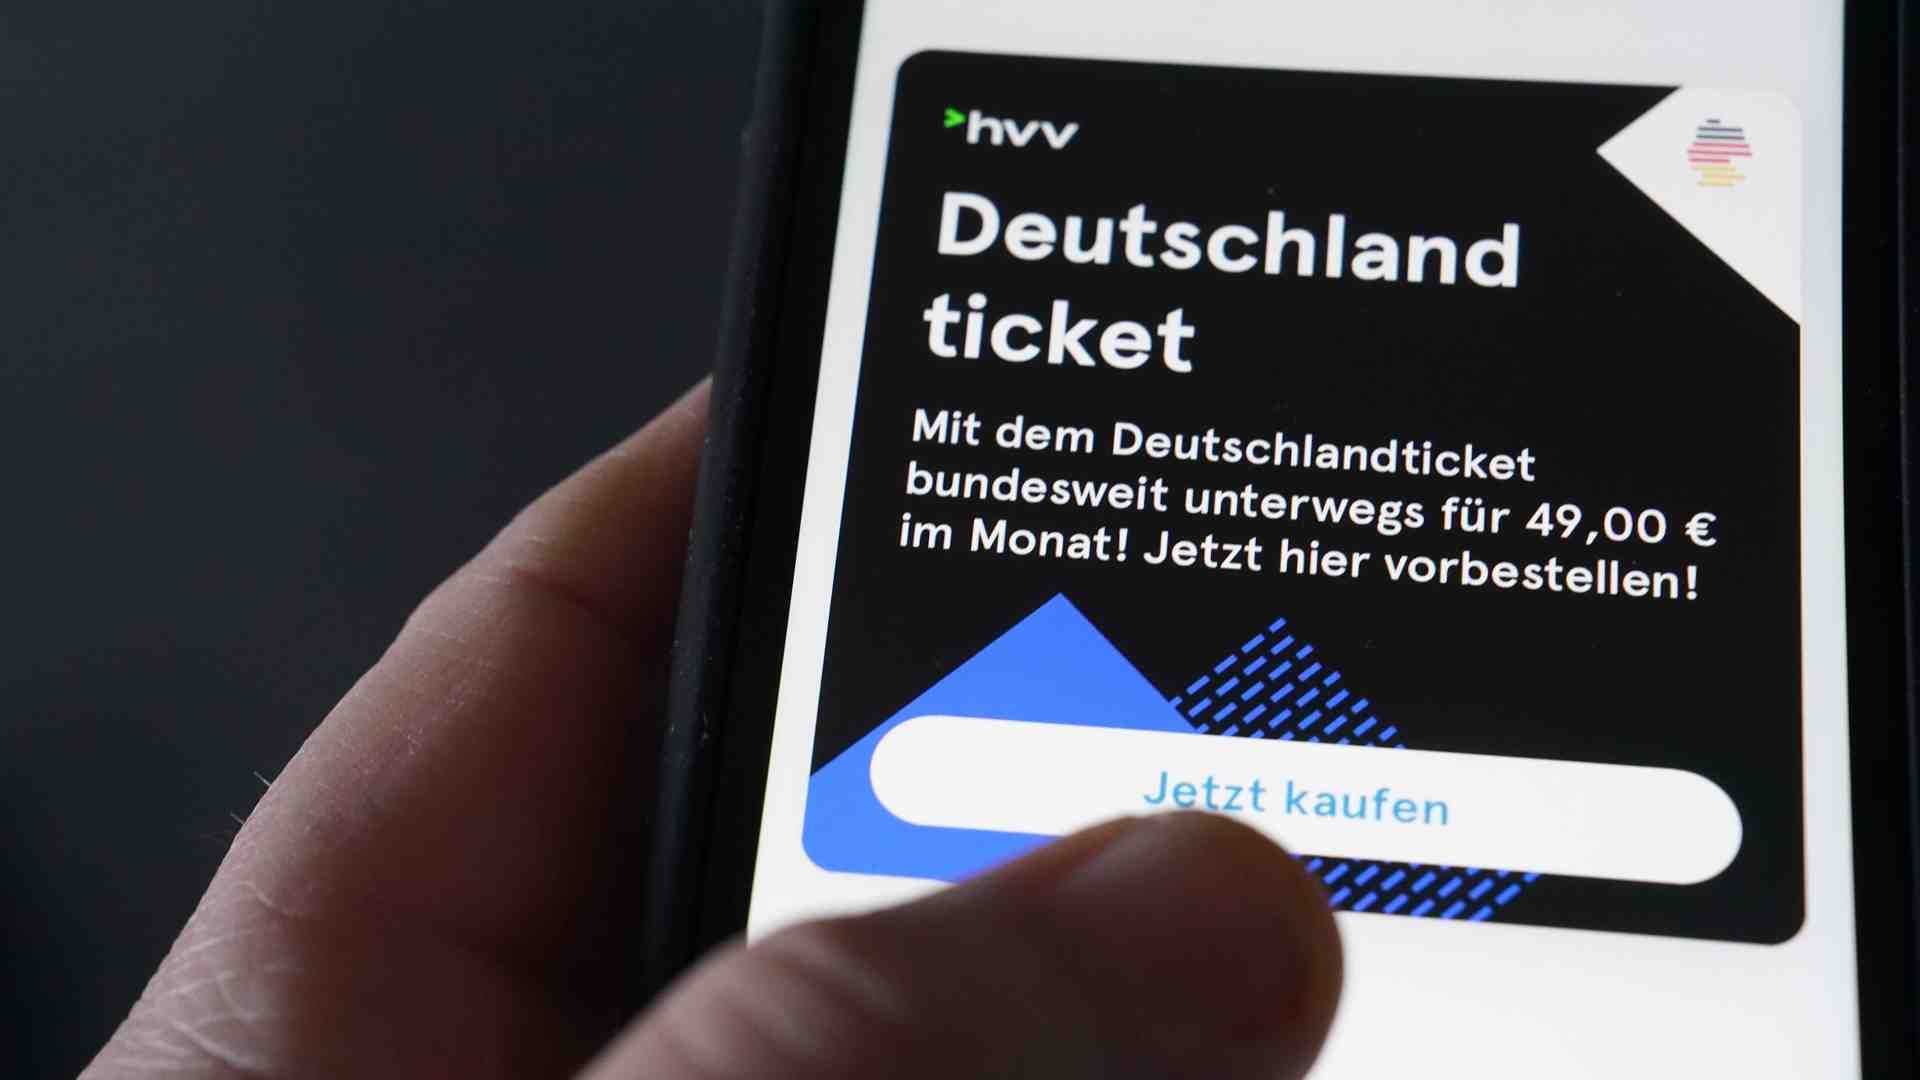 Den billige Deutschland-billet ser ud til at stige i pris. Foto: